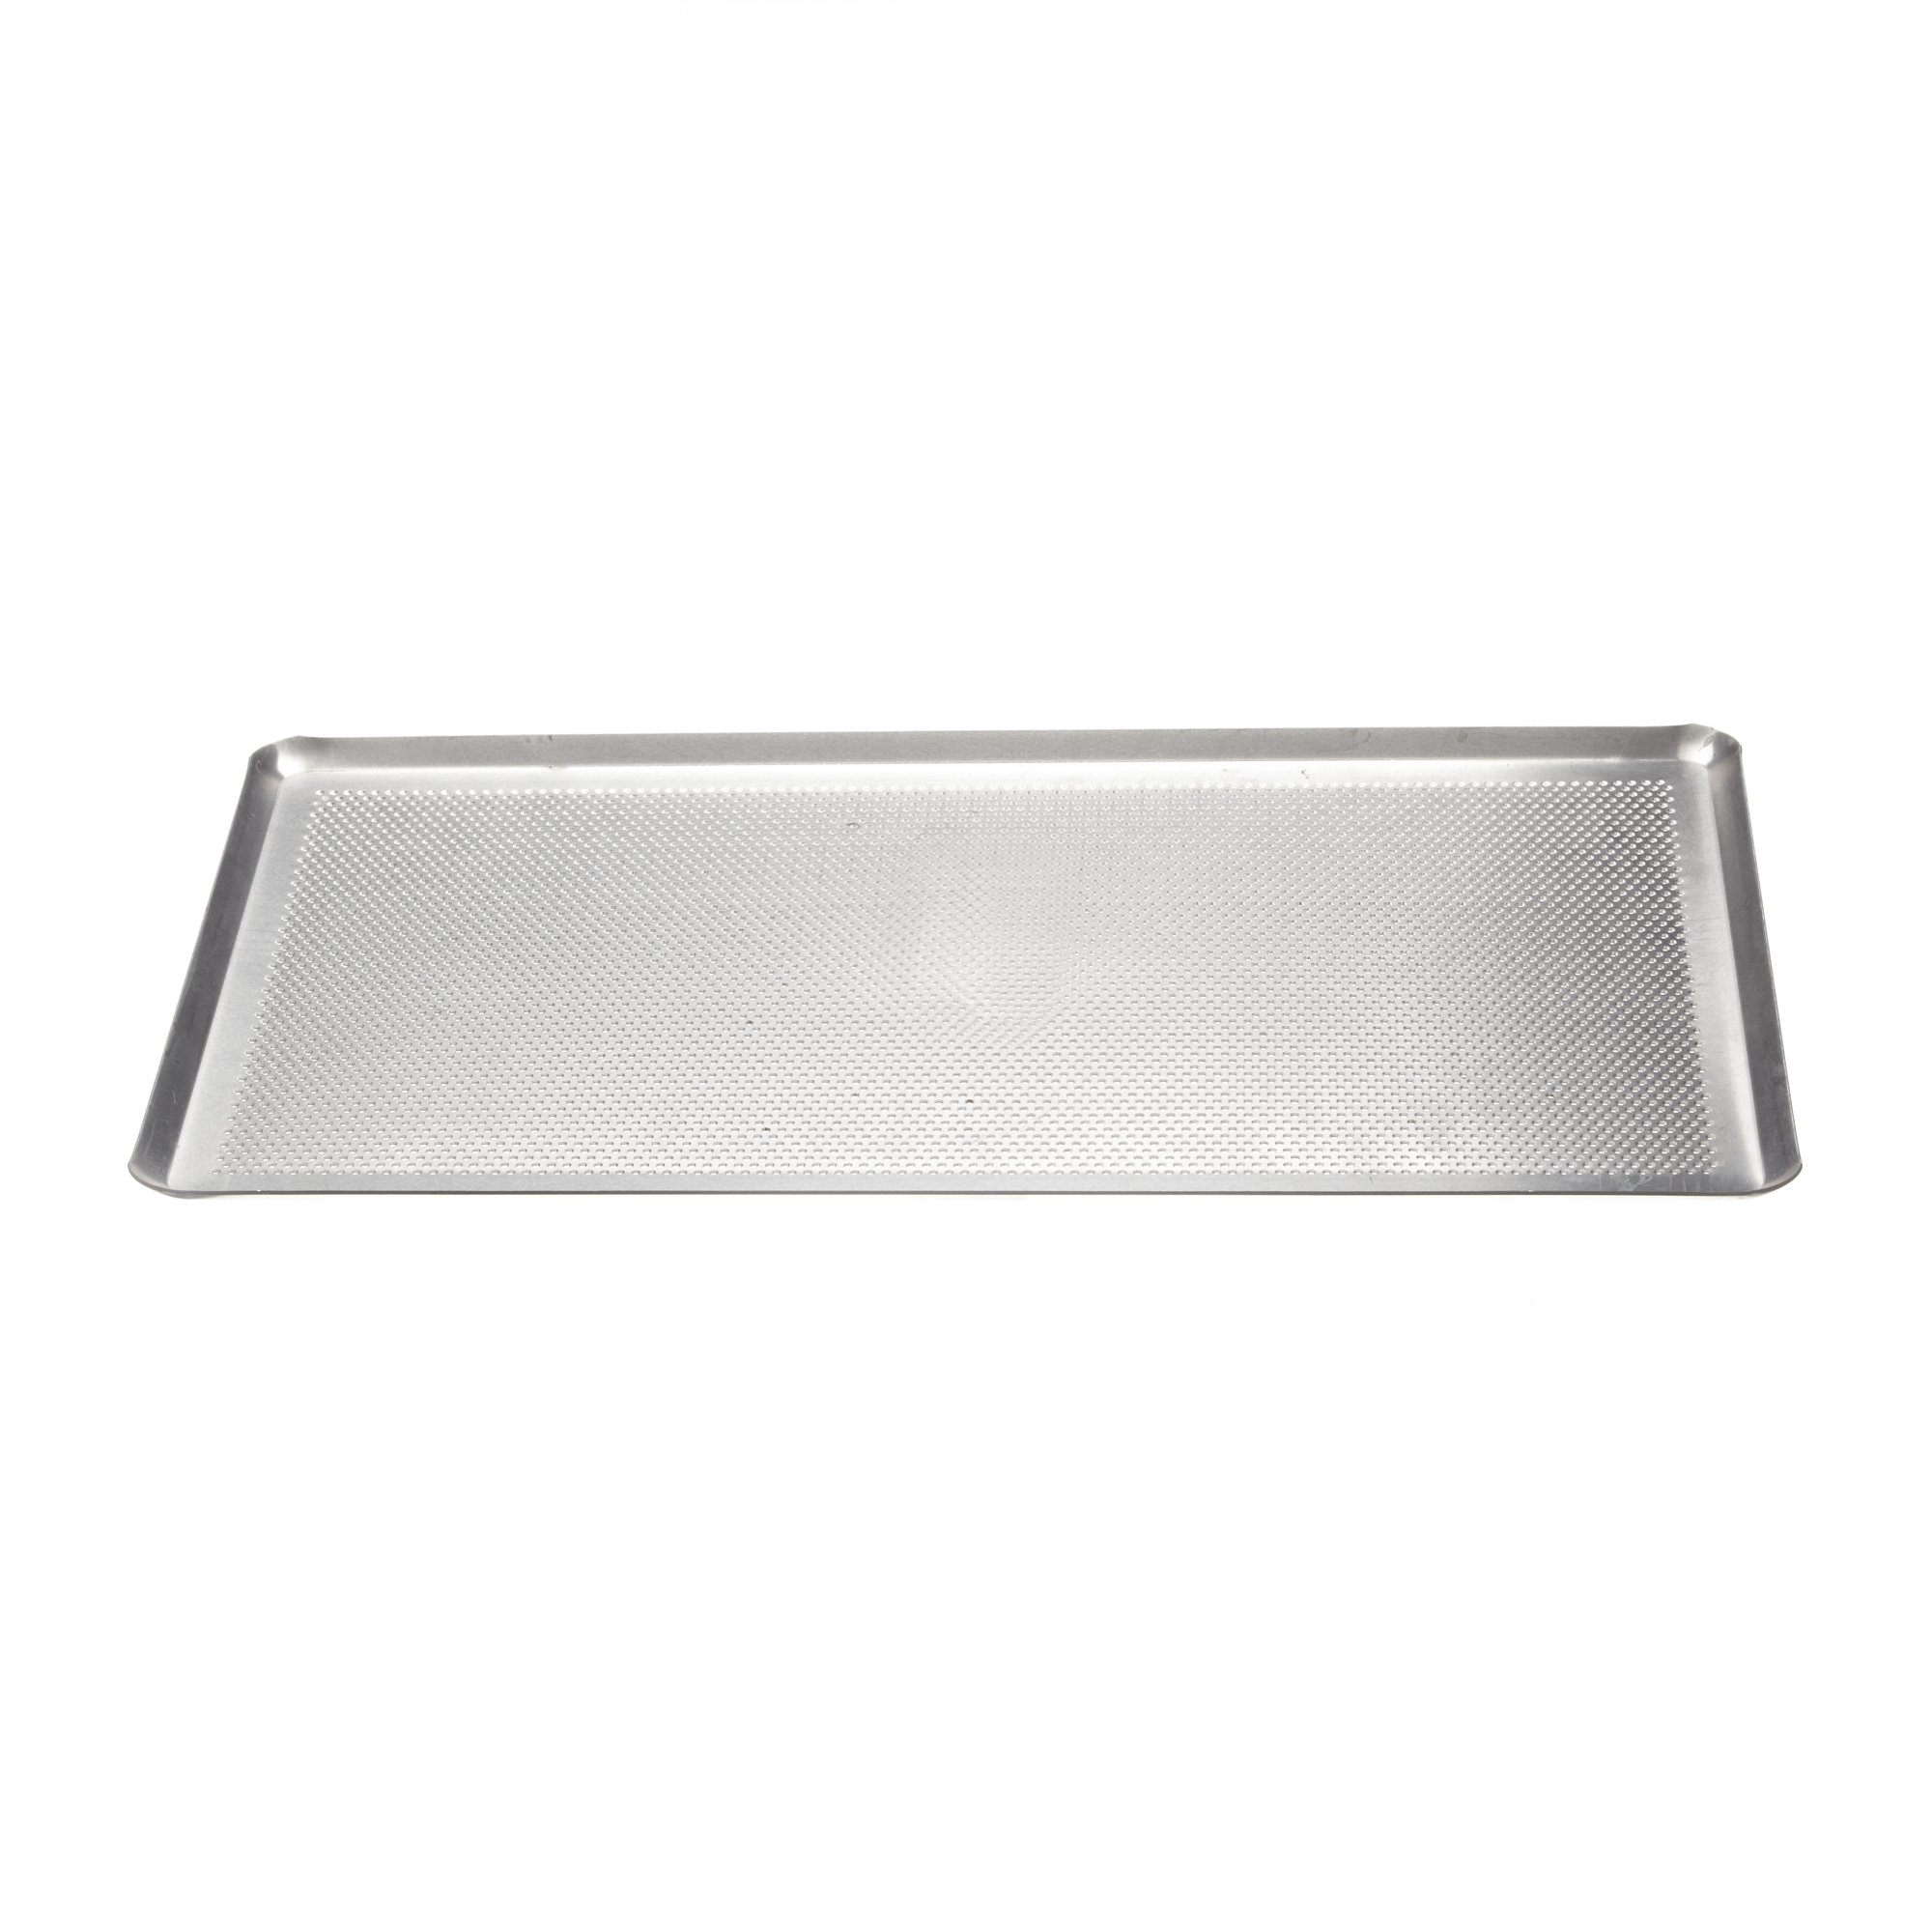 Plaque à pâtisserie perforée en aluminium - Plaque de cuisson perforé